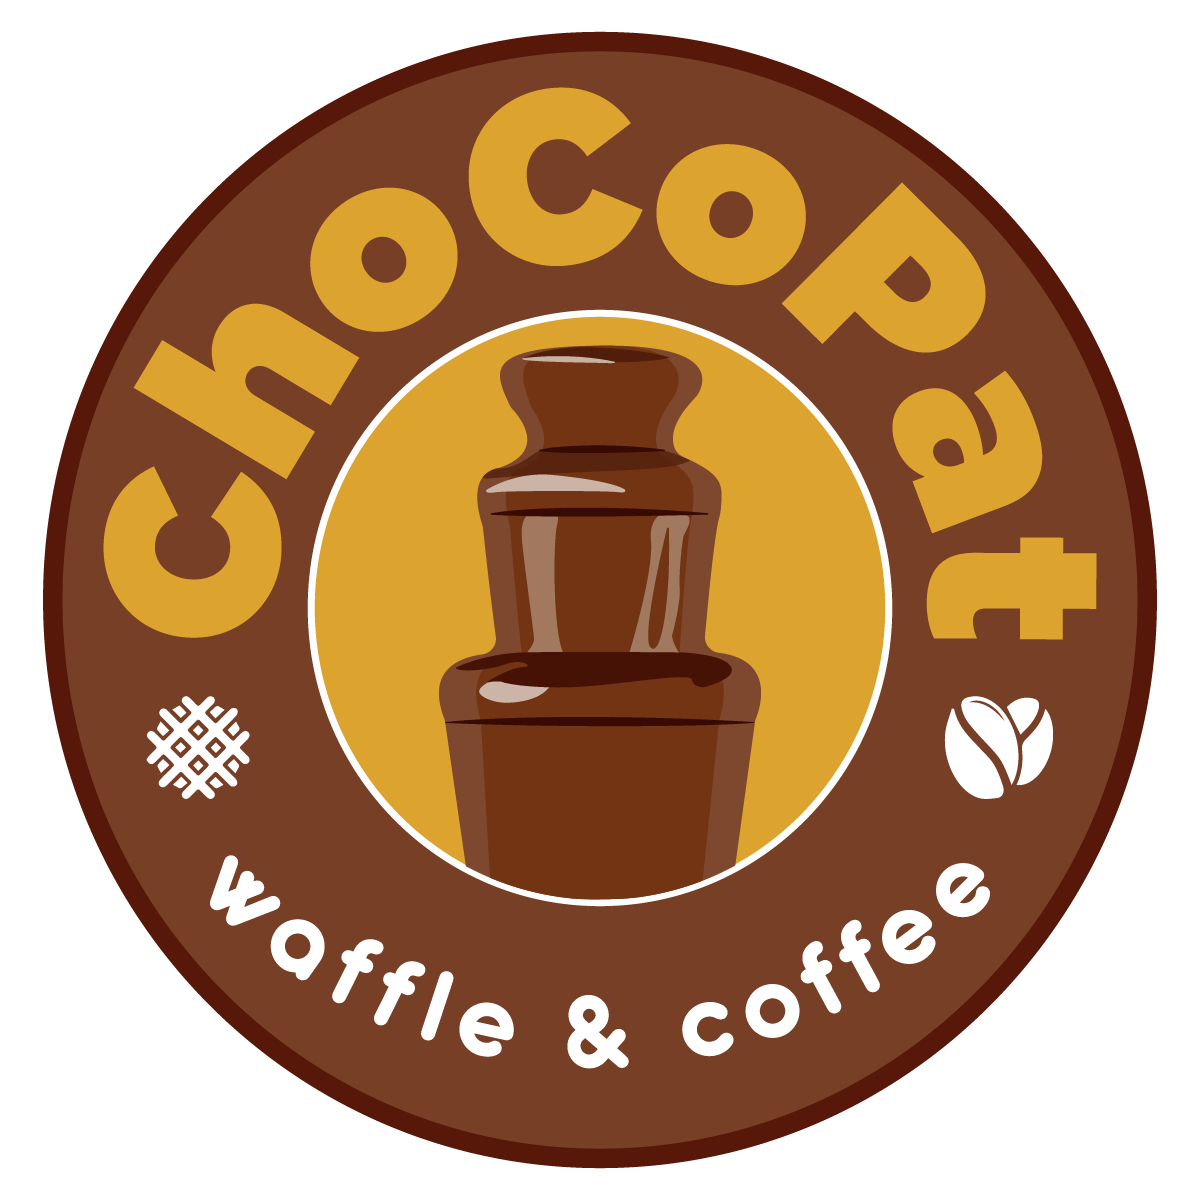 Chocopat Waffle&Coffee